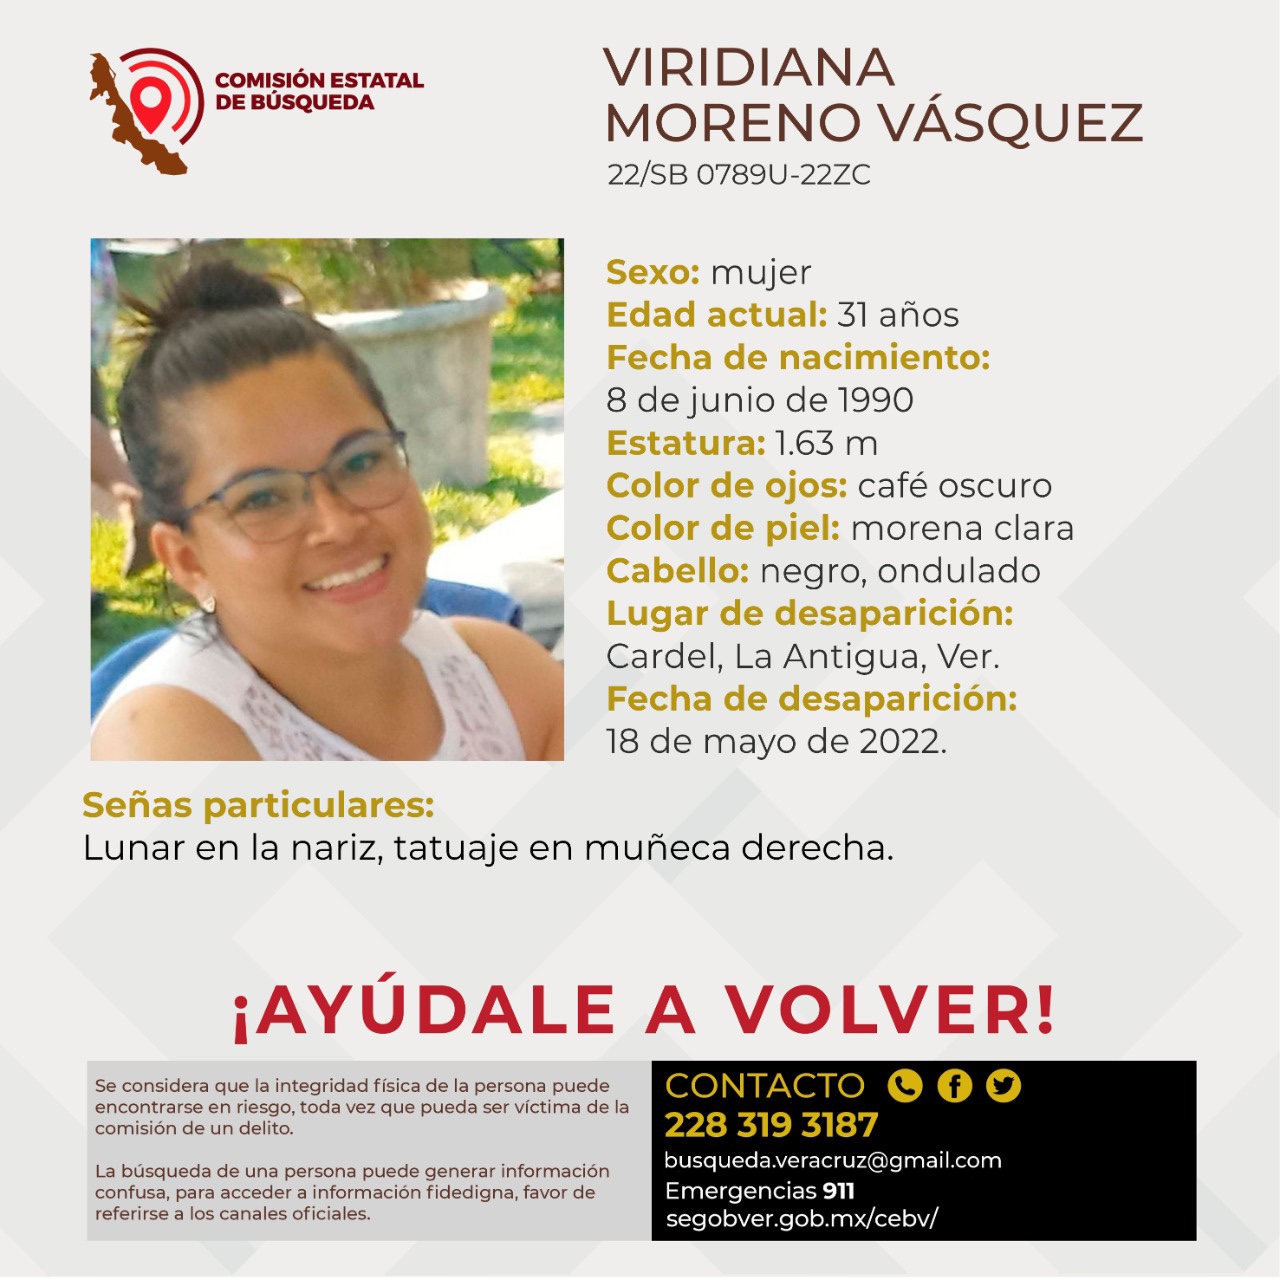 Comisión de Búsqueda atiende caso de Viridiana Moreno en Cardel